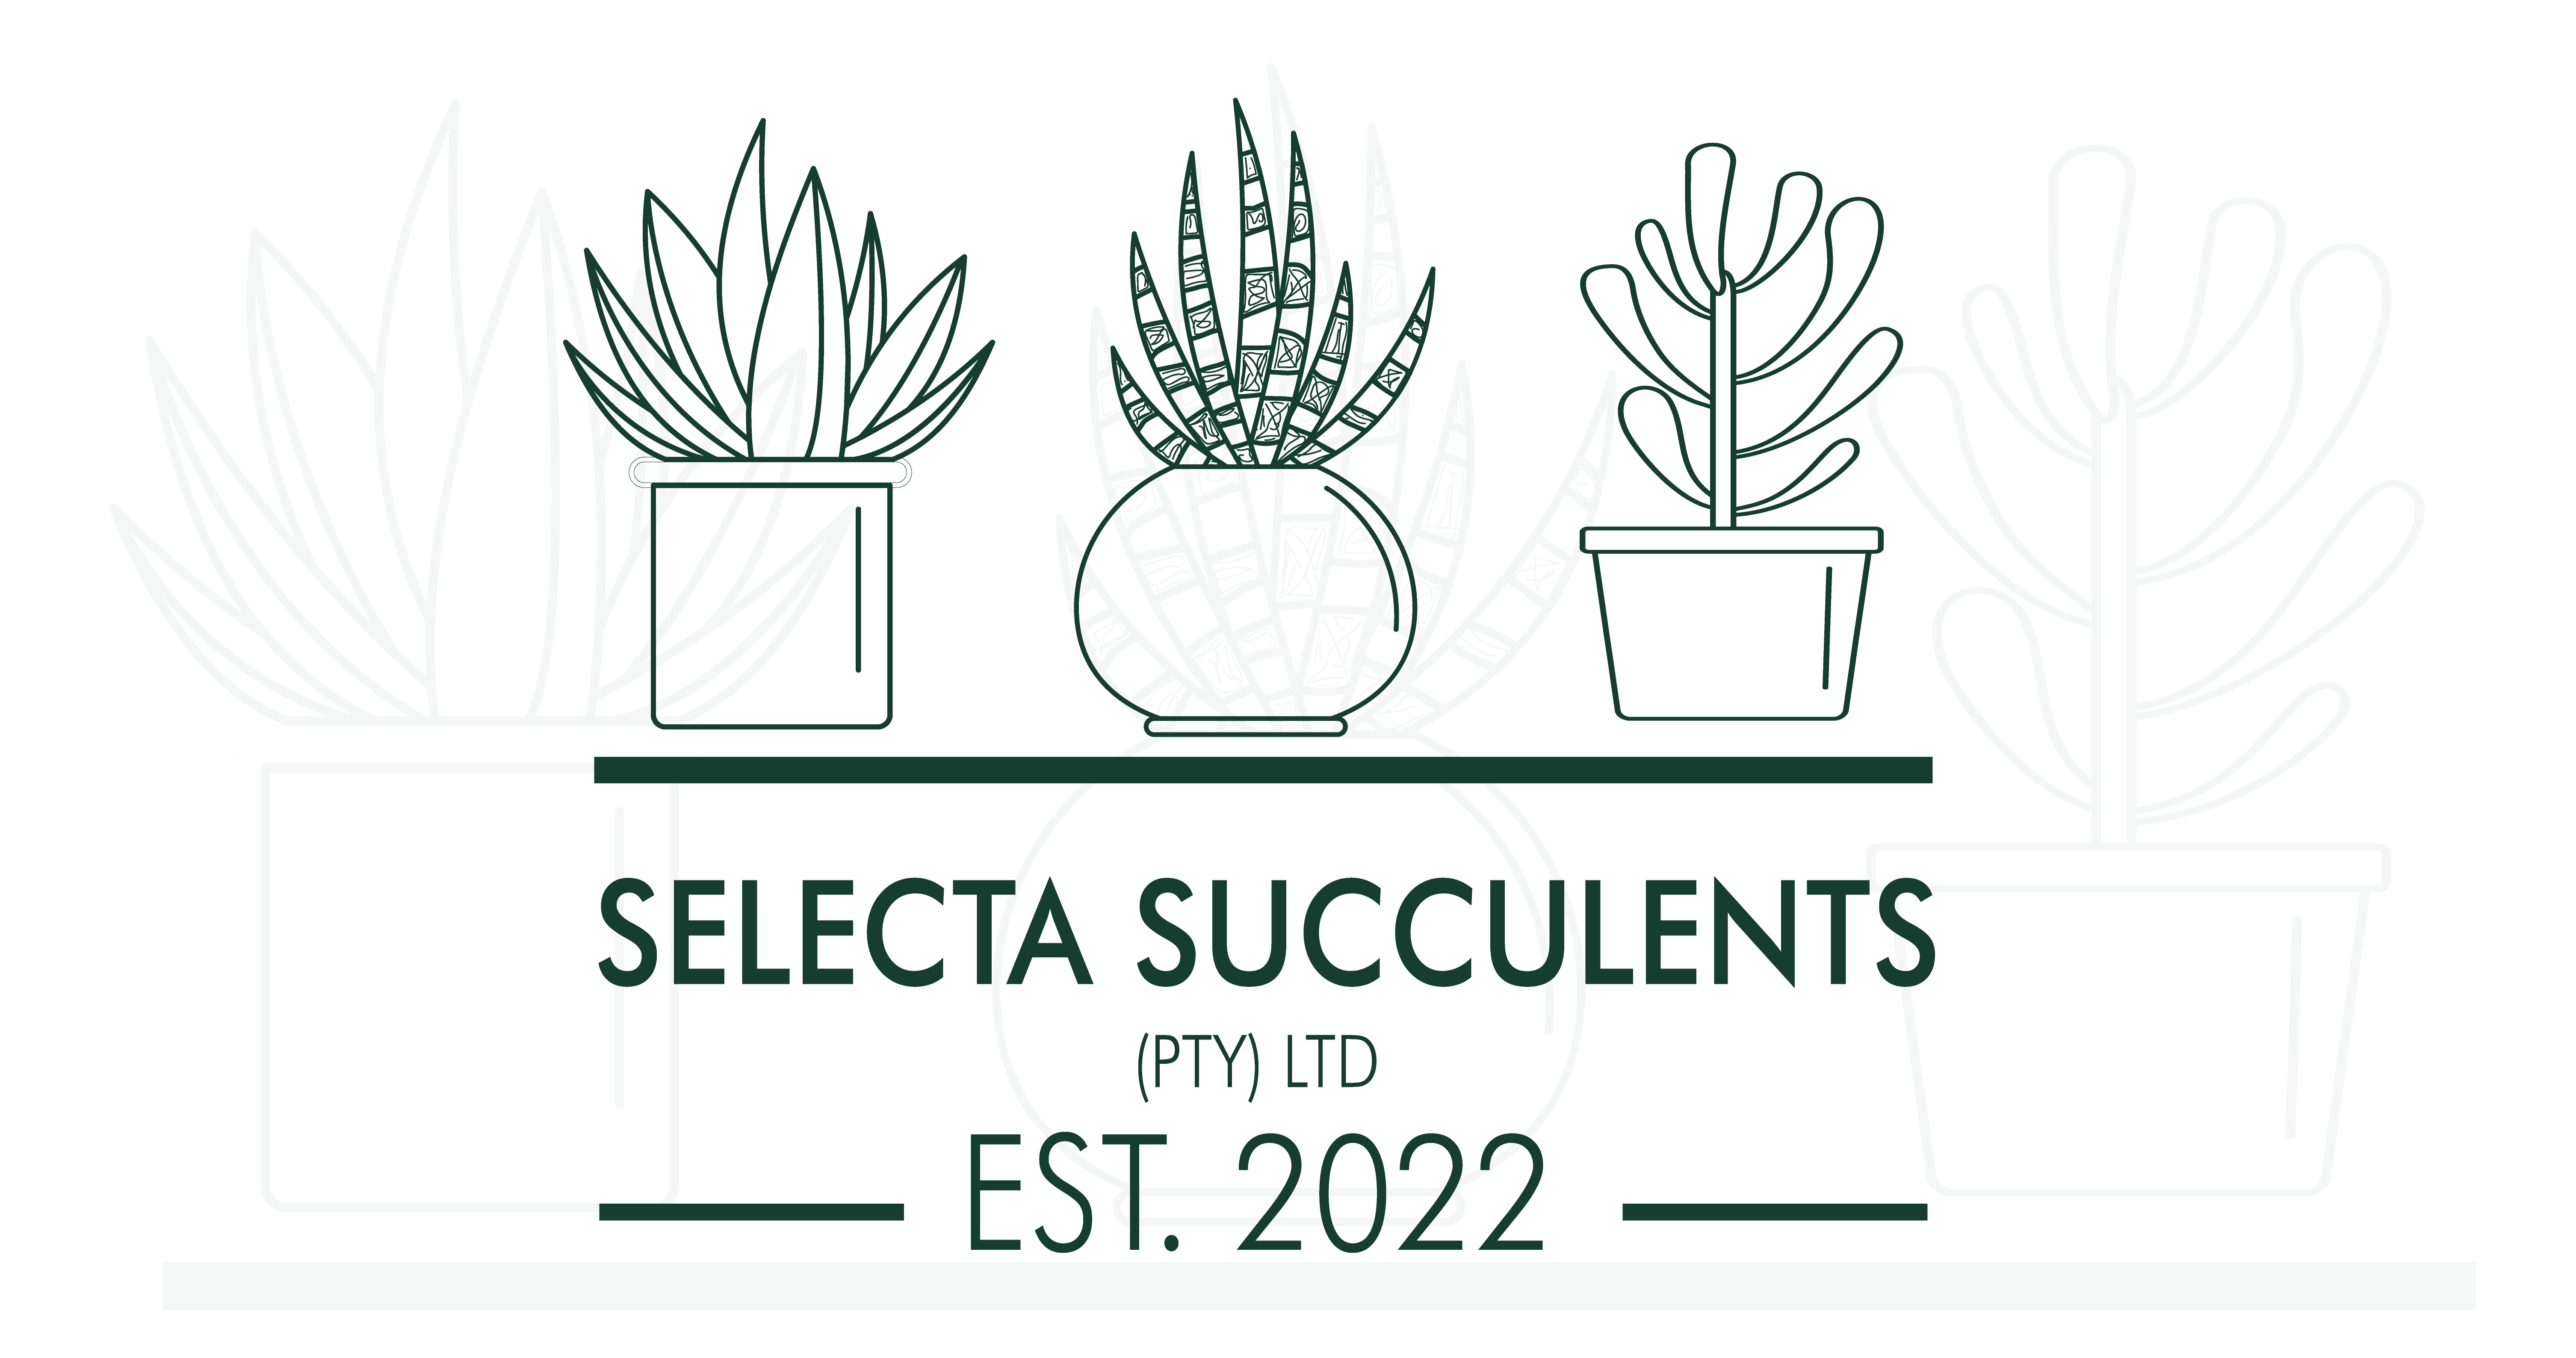 Selecta Succulents